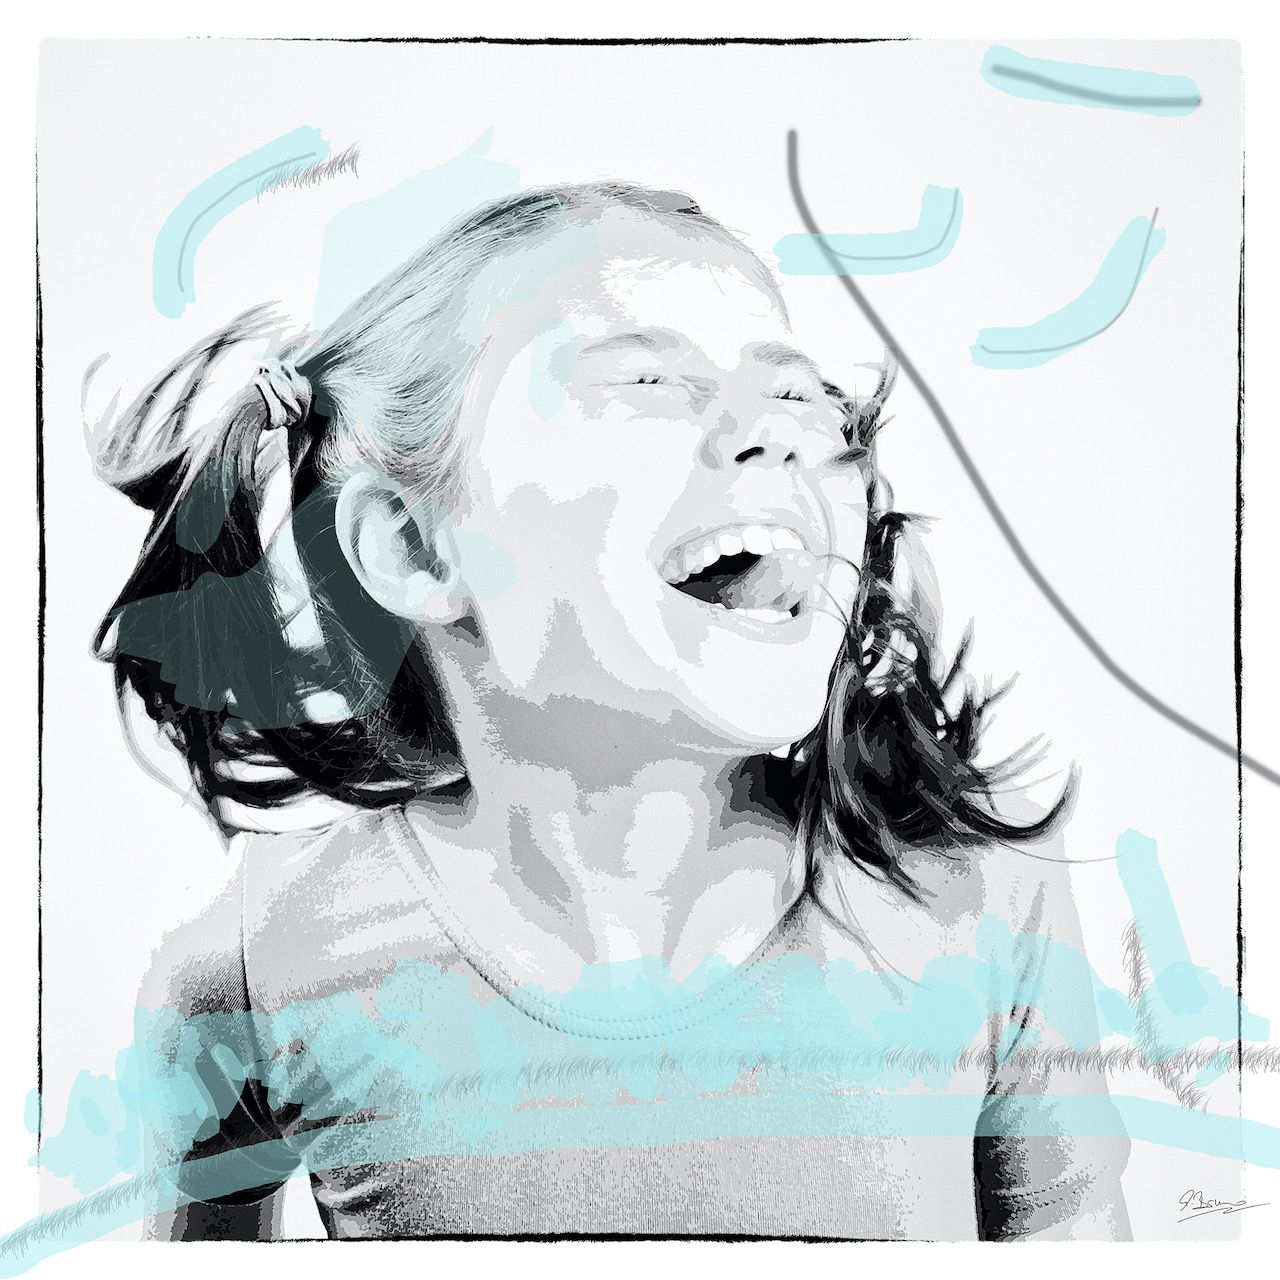 Ute Bruno pittura digitale ritratto in bianco e nero ragazza ridente con fiocchi